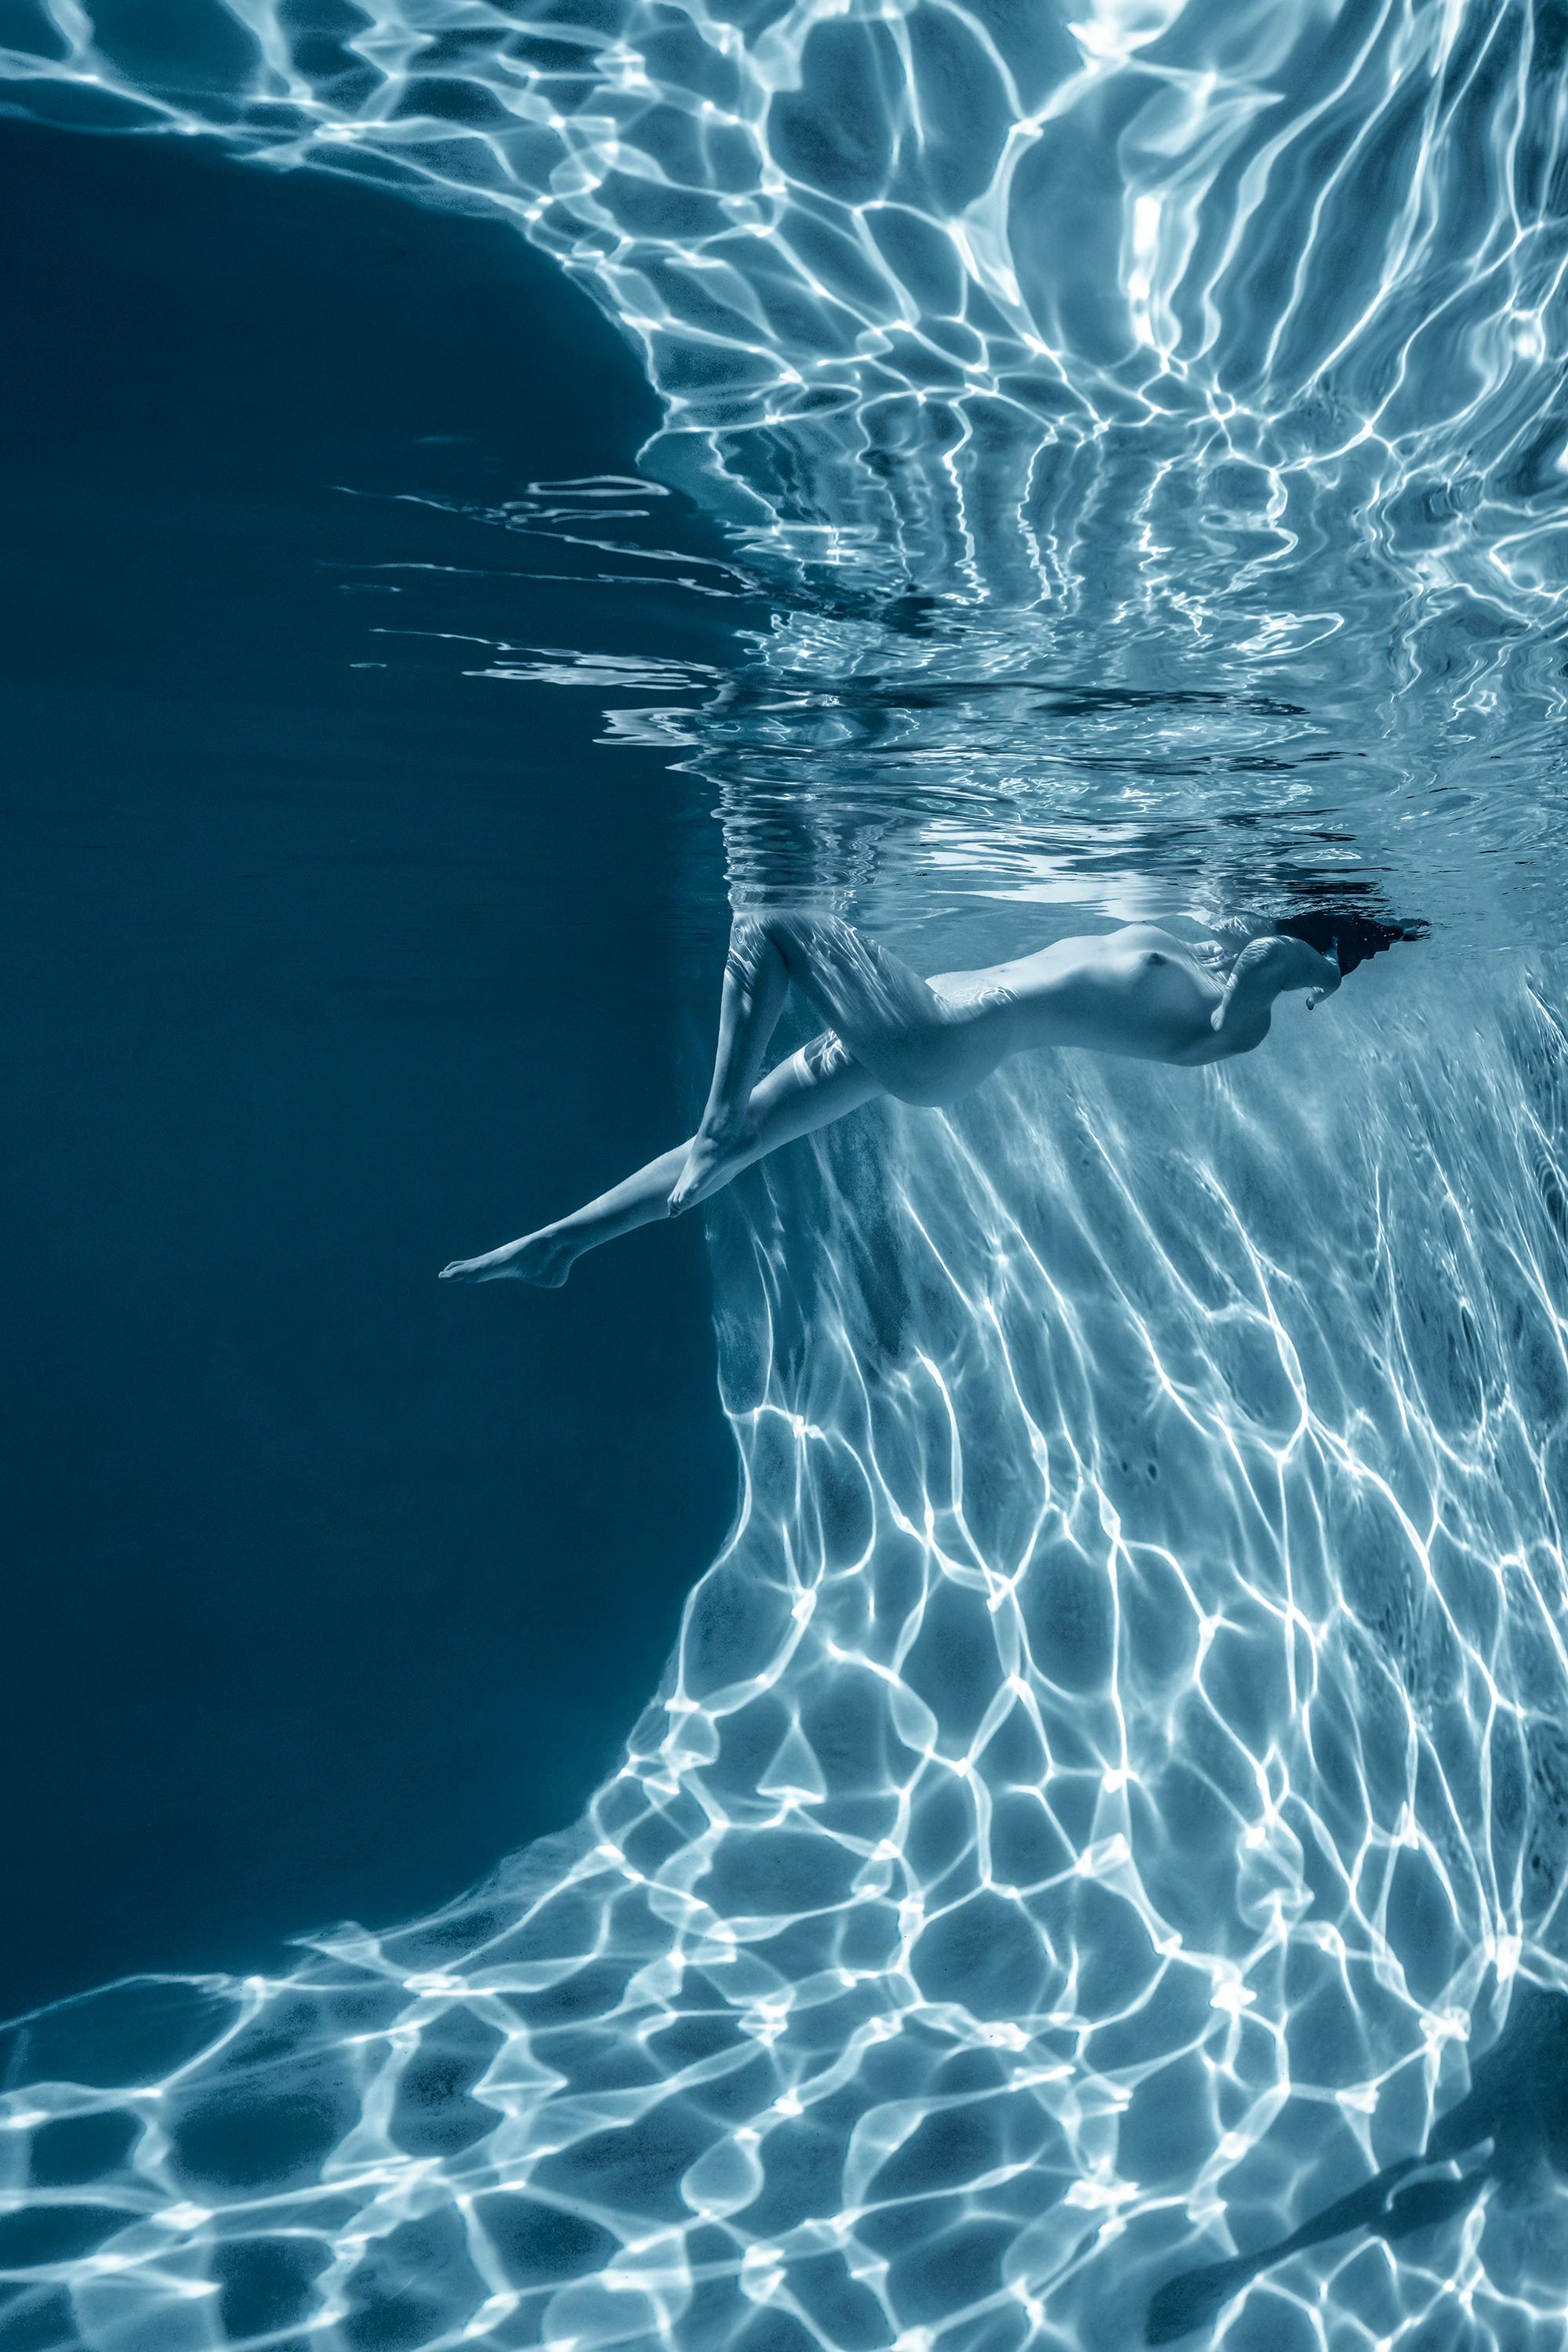 Marmorhhle  Unterwasser-Nacktfotografie  archivtauglicher Pigmentdruck